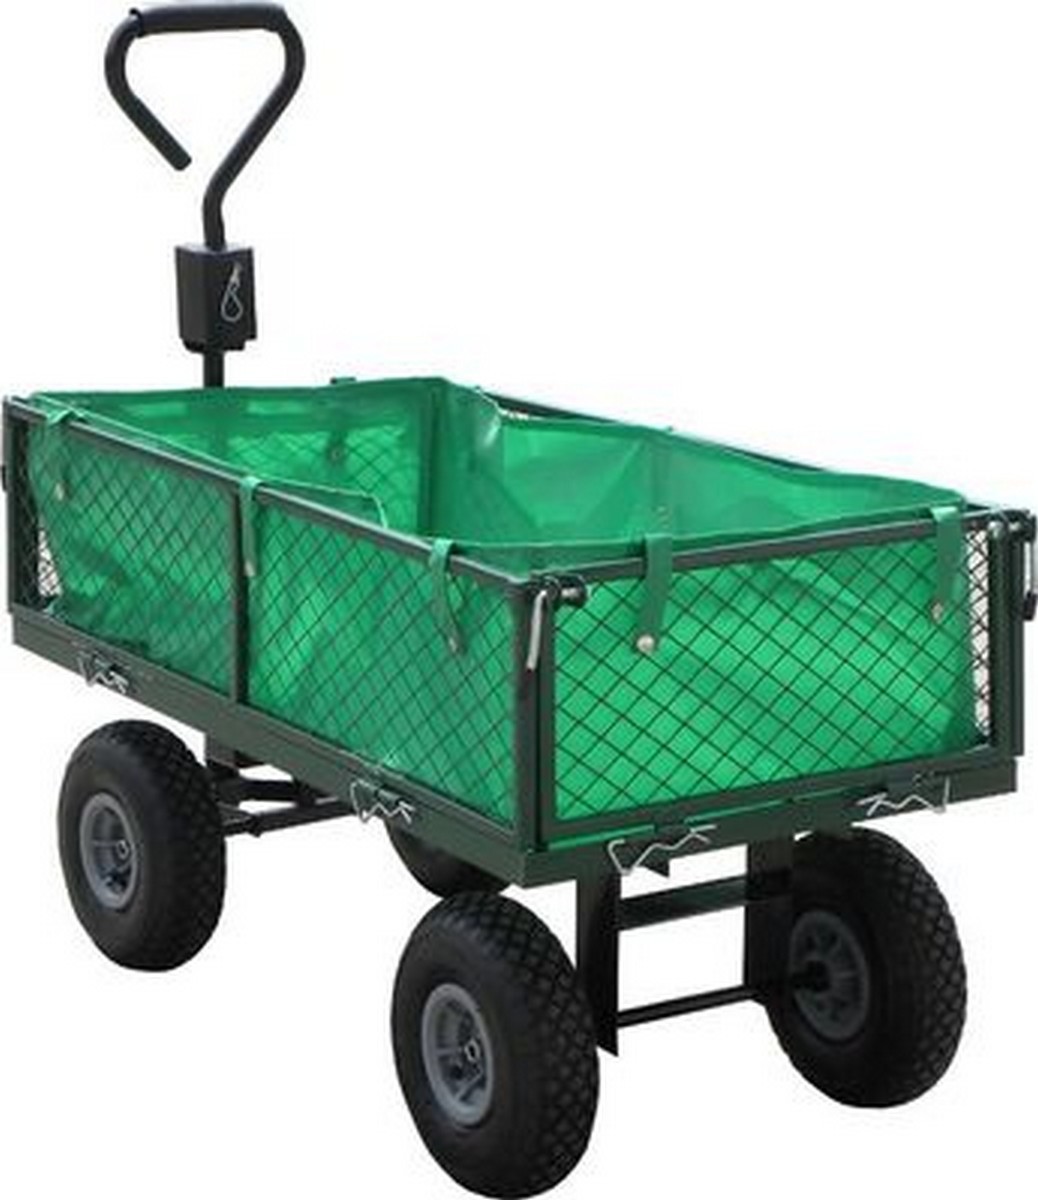 Zahradní vozík, nosnost 350kg GEKO nářadí G71110 + Dárek, servis bez starostí v hodnotě 300Kč